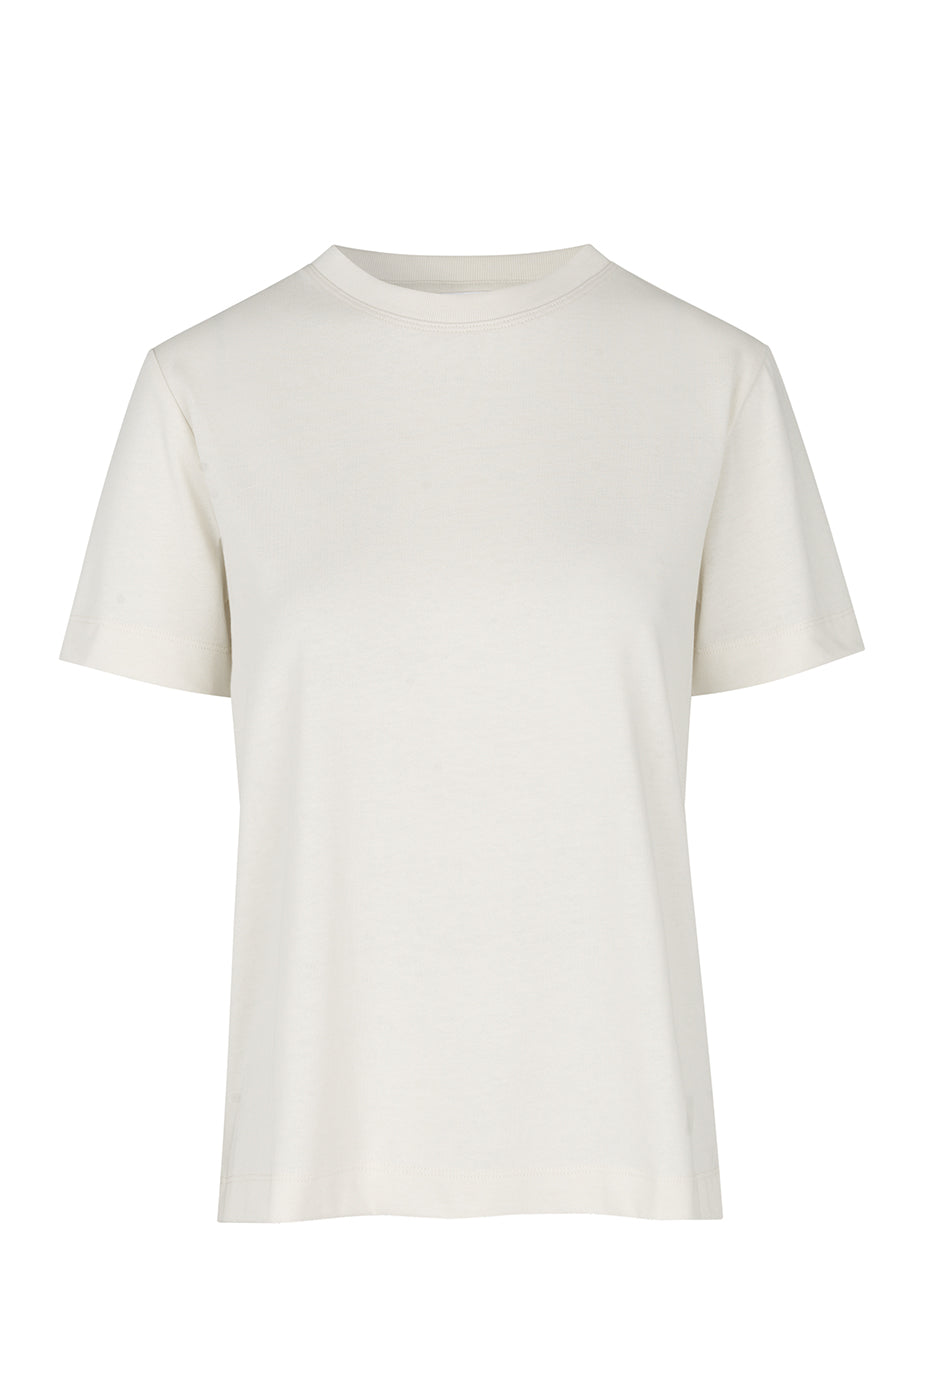 Clear Cream Camino T-Shirt